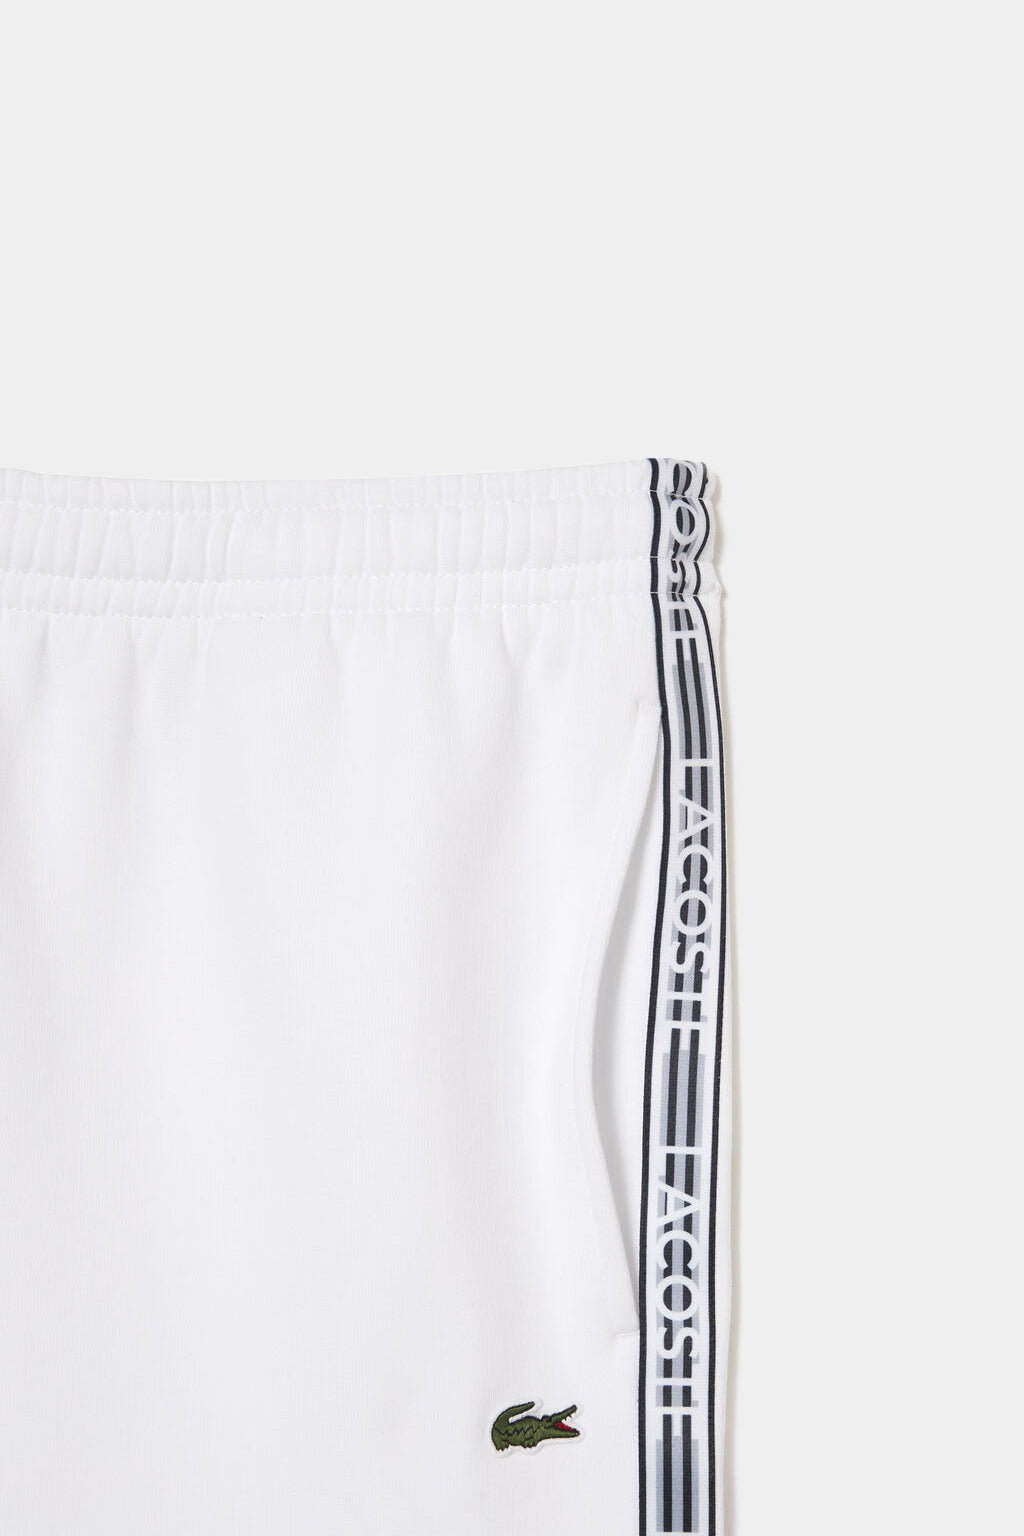 Lacoste - Men’s Lacoste Cotton Flannel Shorts